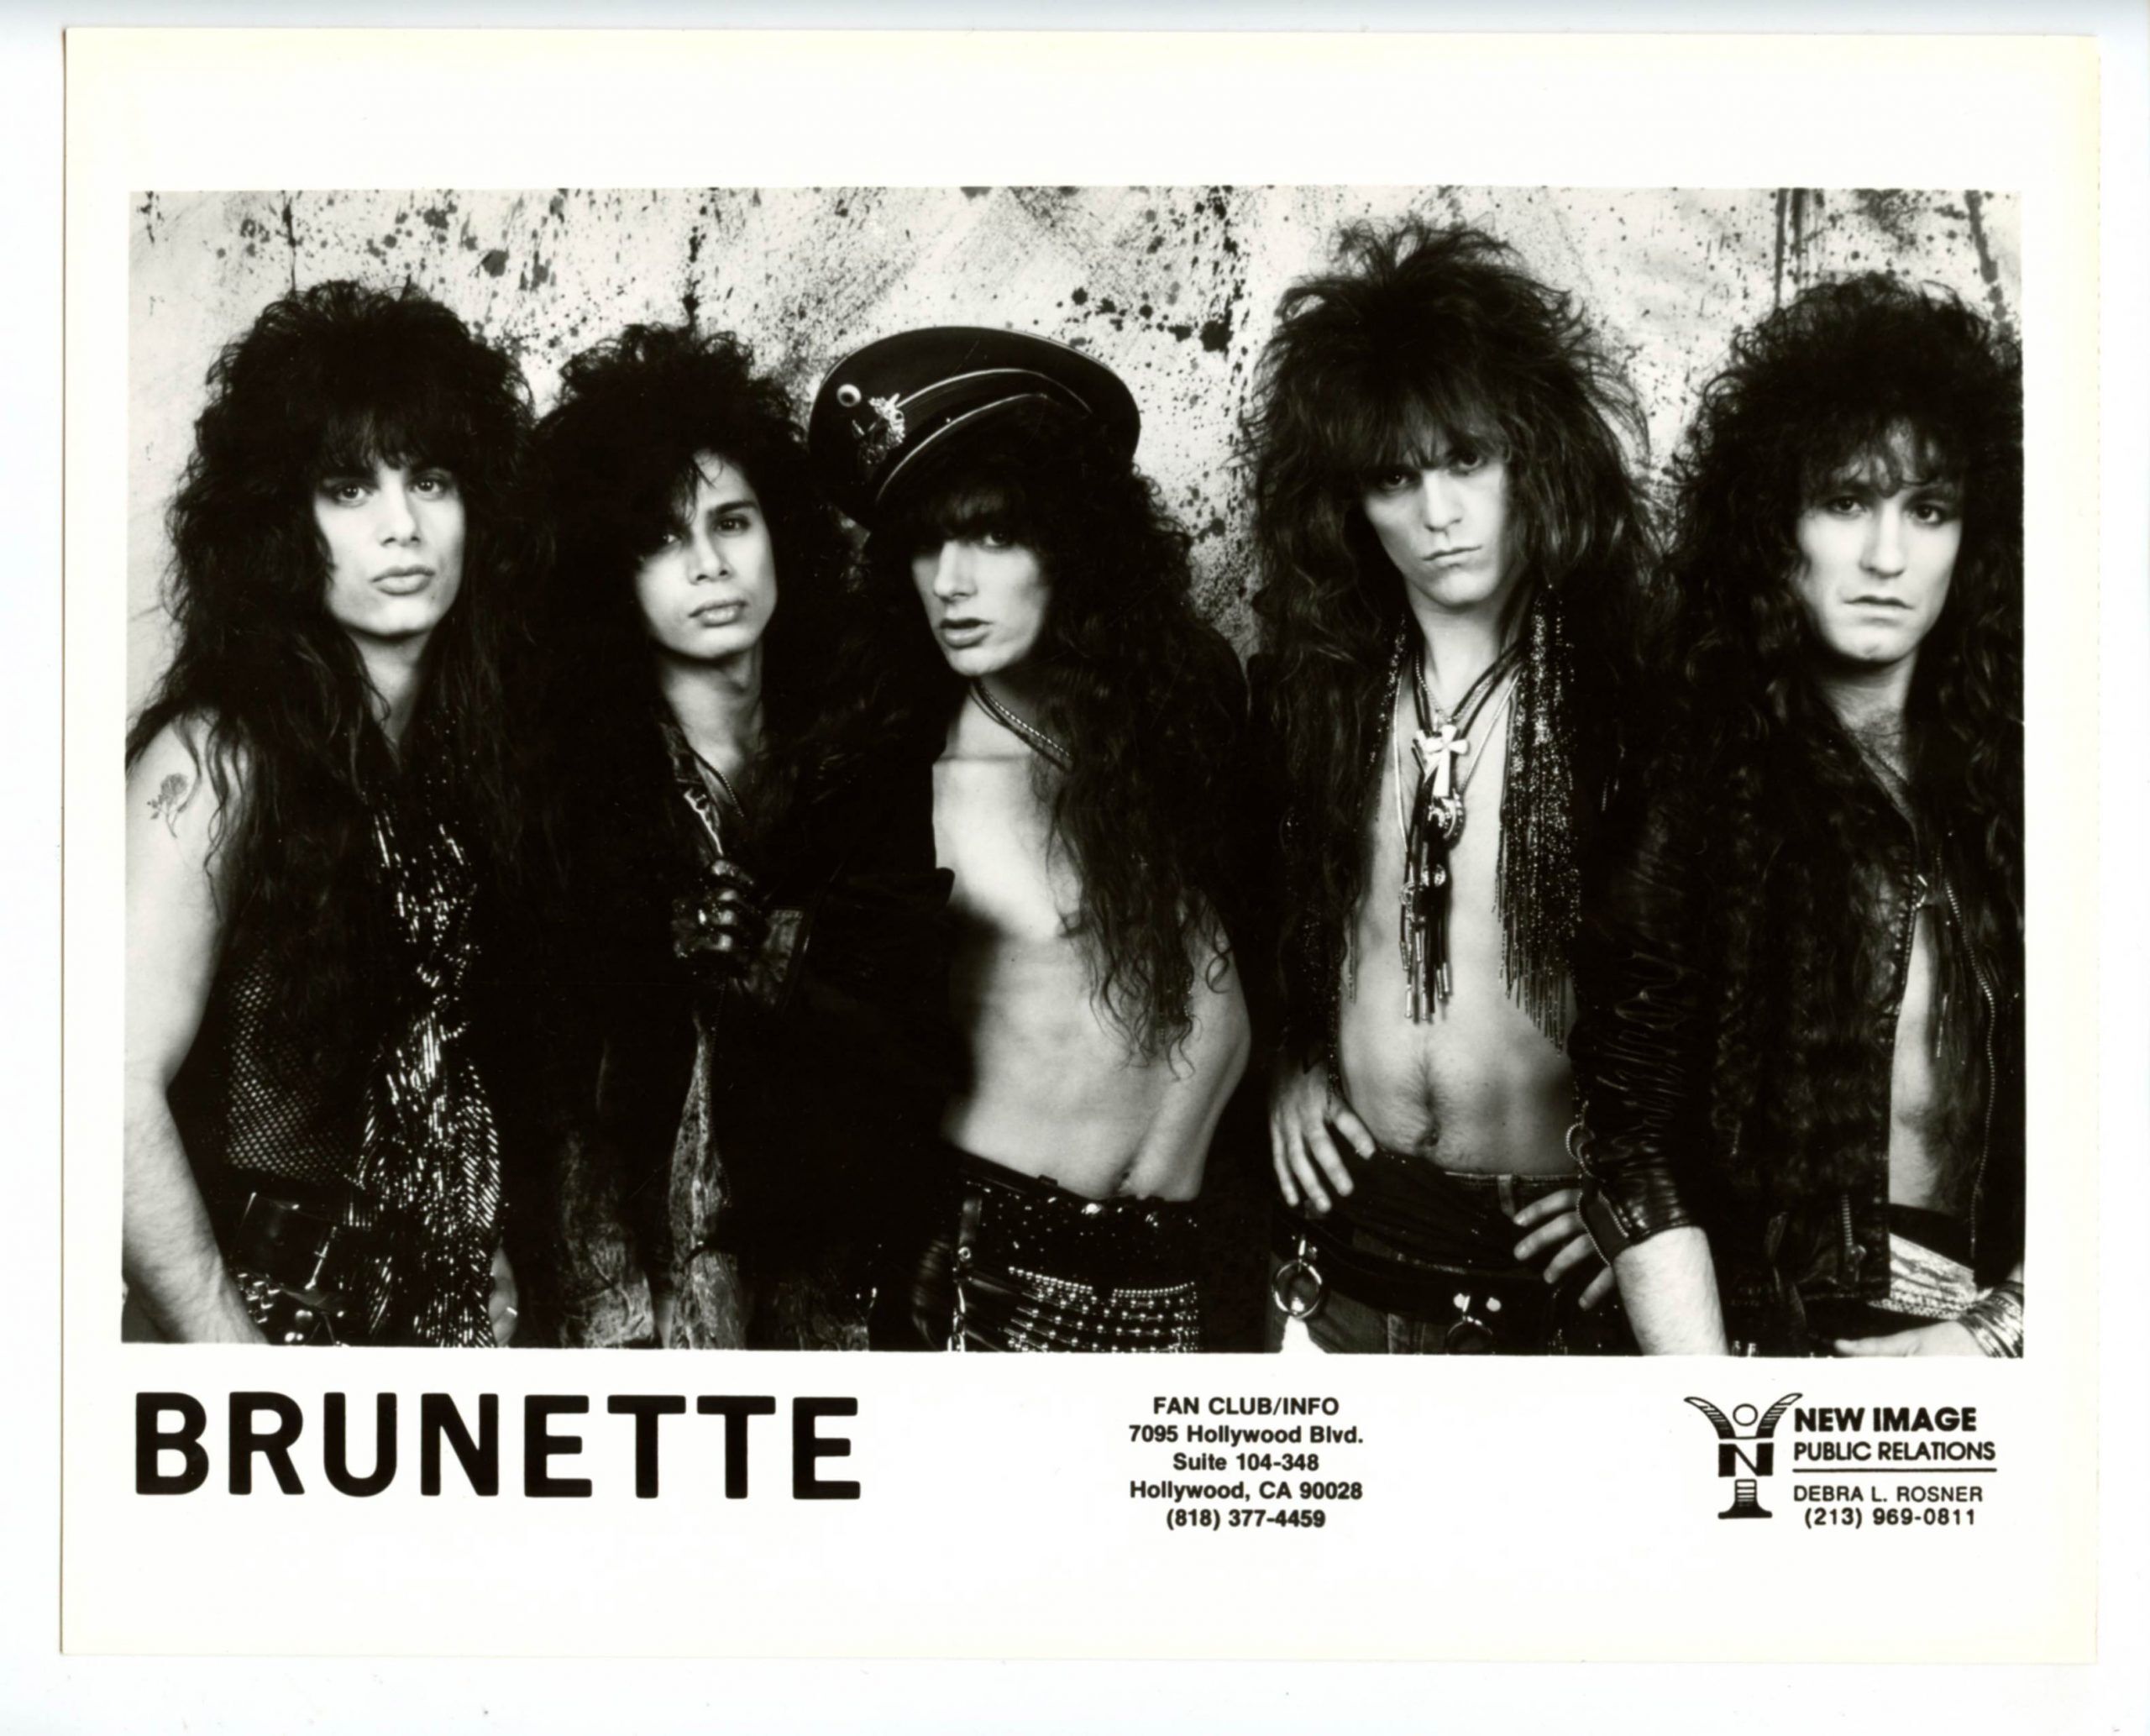 Burnette Photo 1990s Publicity Promotion